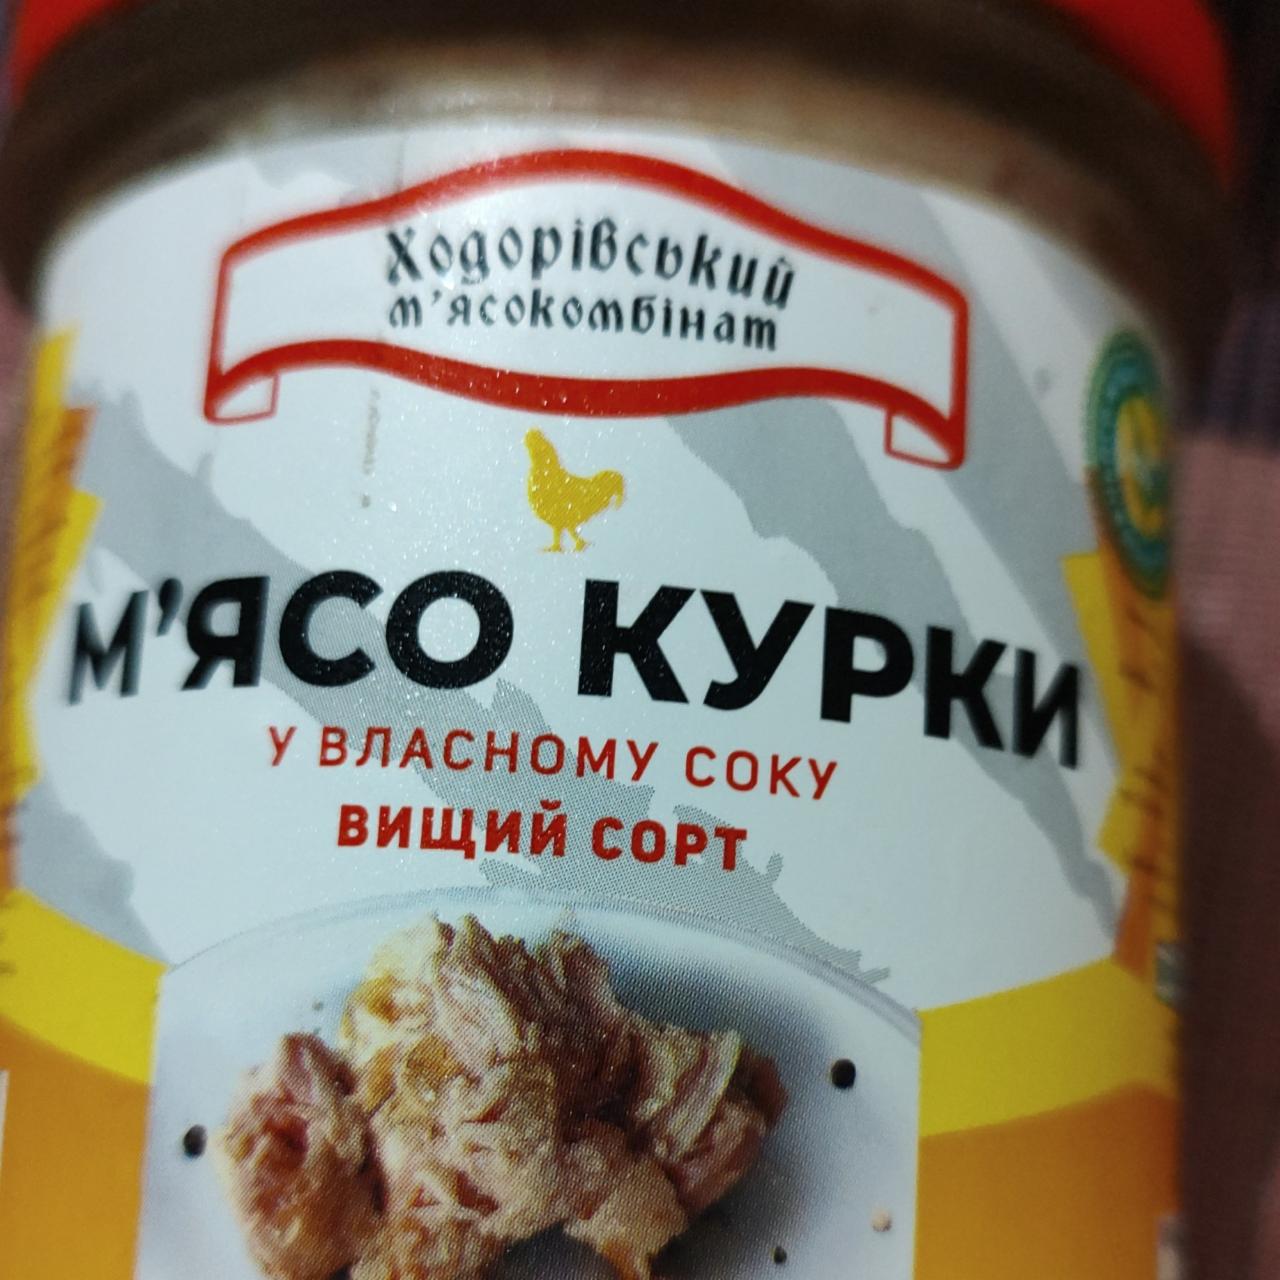 Фото - М'ясо курей у власному соку Ходорівський м'ясокомбінат